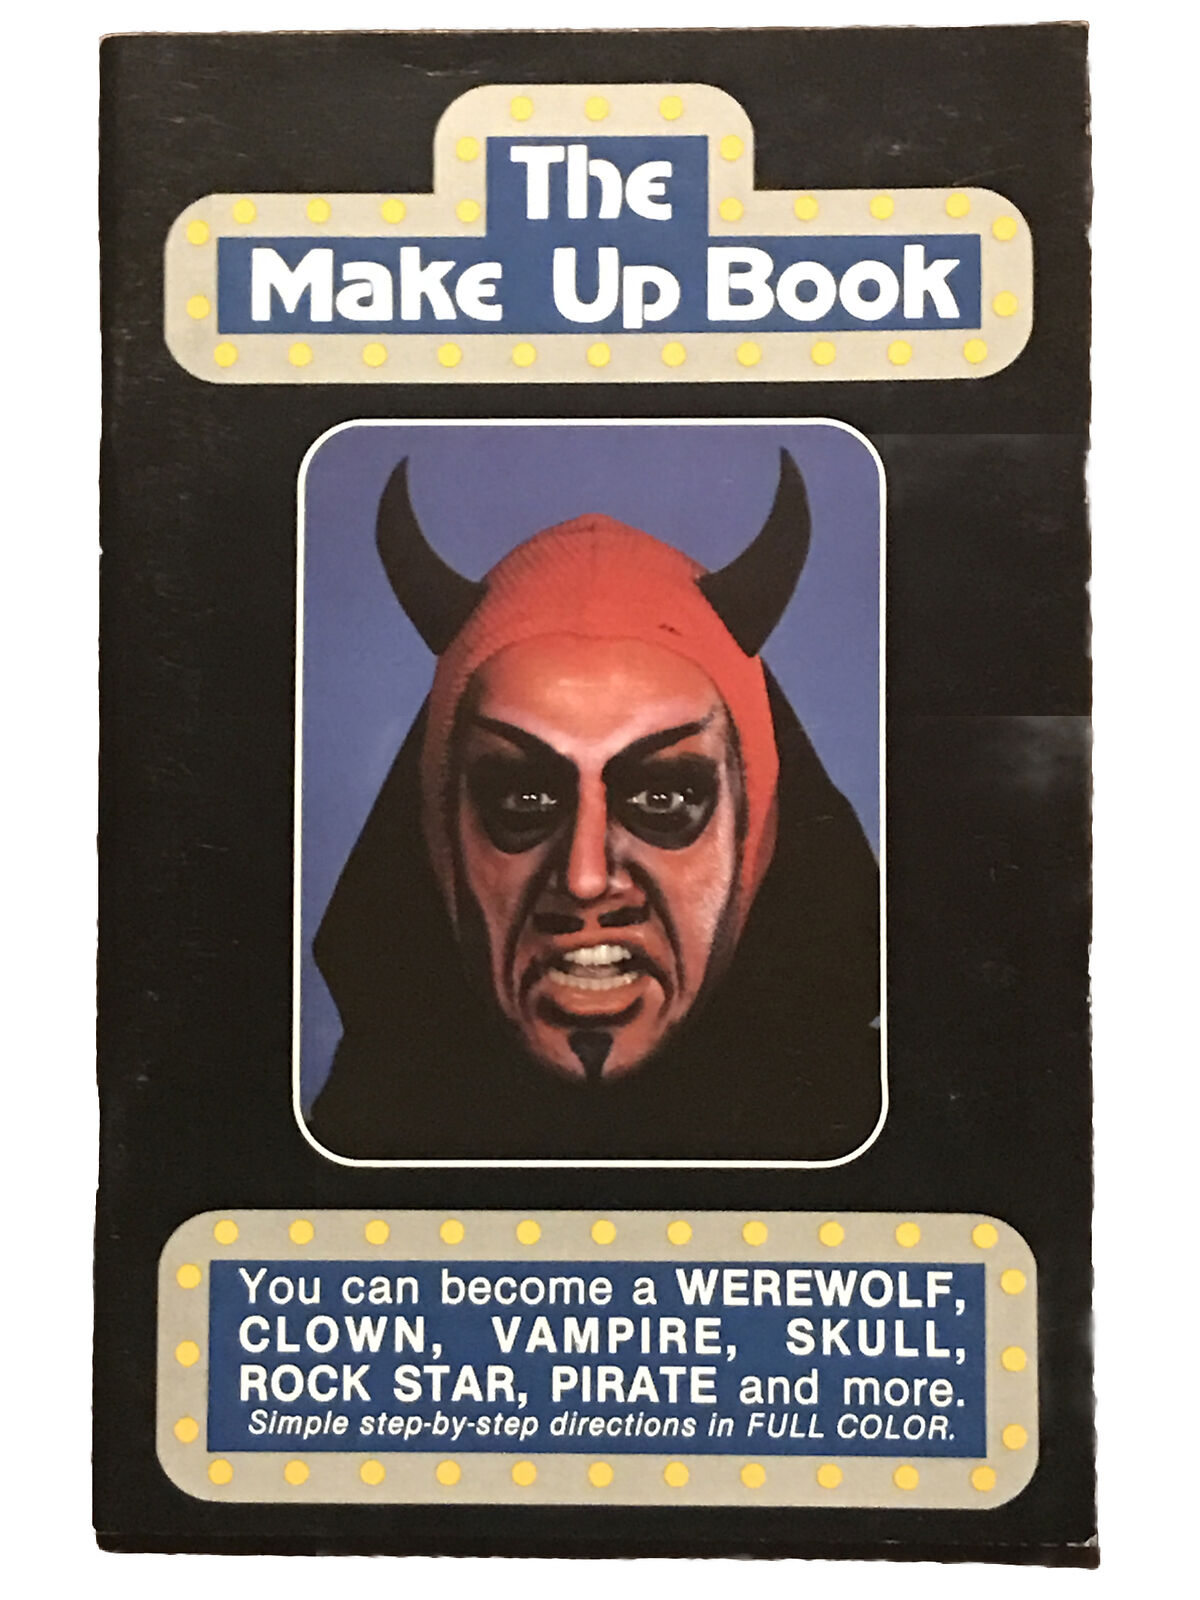 Vintage 1981 The Make Up Book: Werewolf Clown Vampire Skull Pirate Halloween